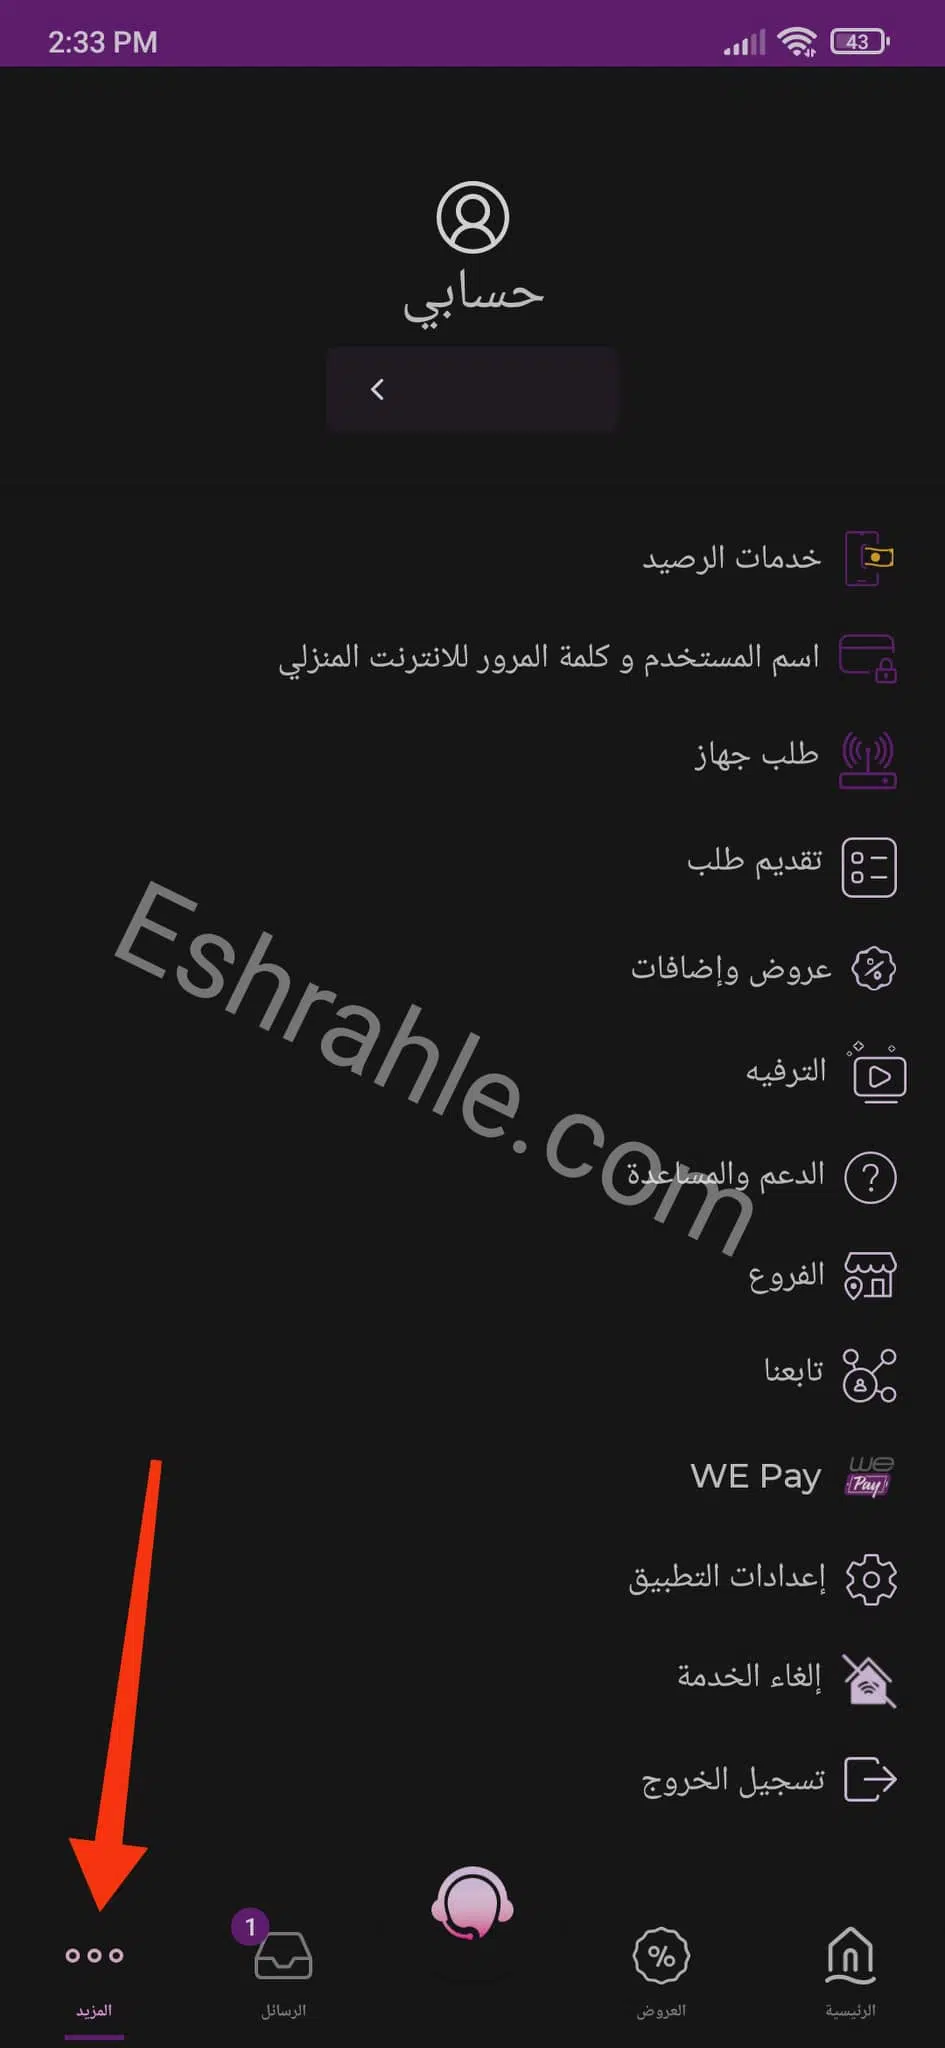 تحميل تطبيق ماي وي my we لادارة خطك - الانترنت الارضي 7